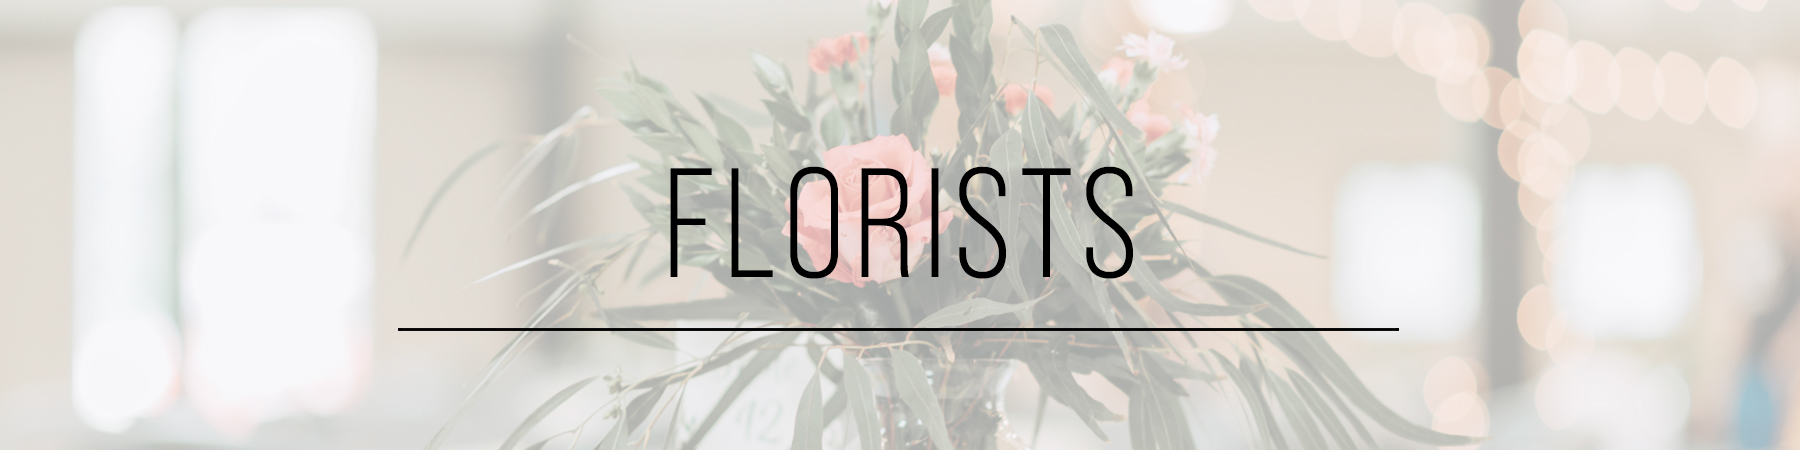 florists_header